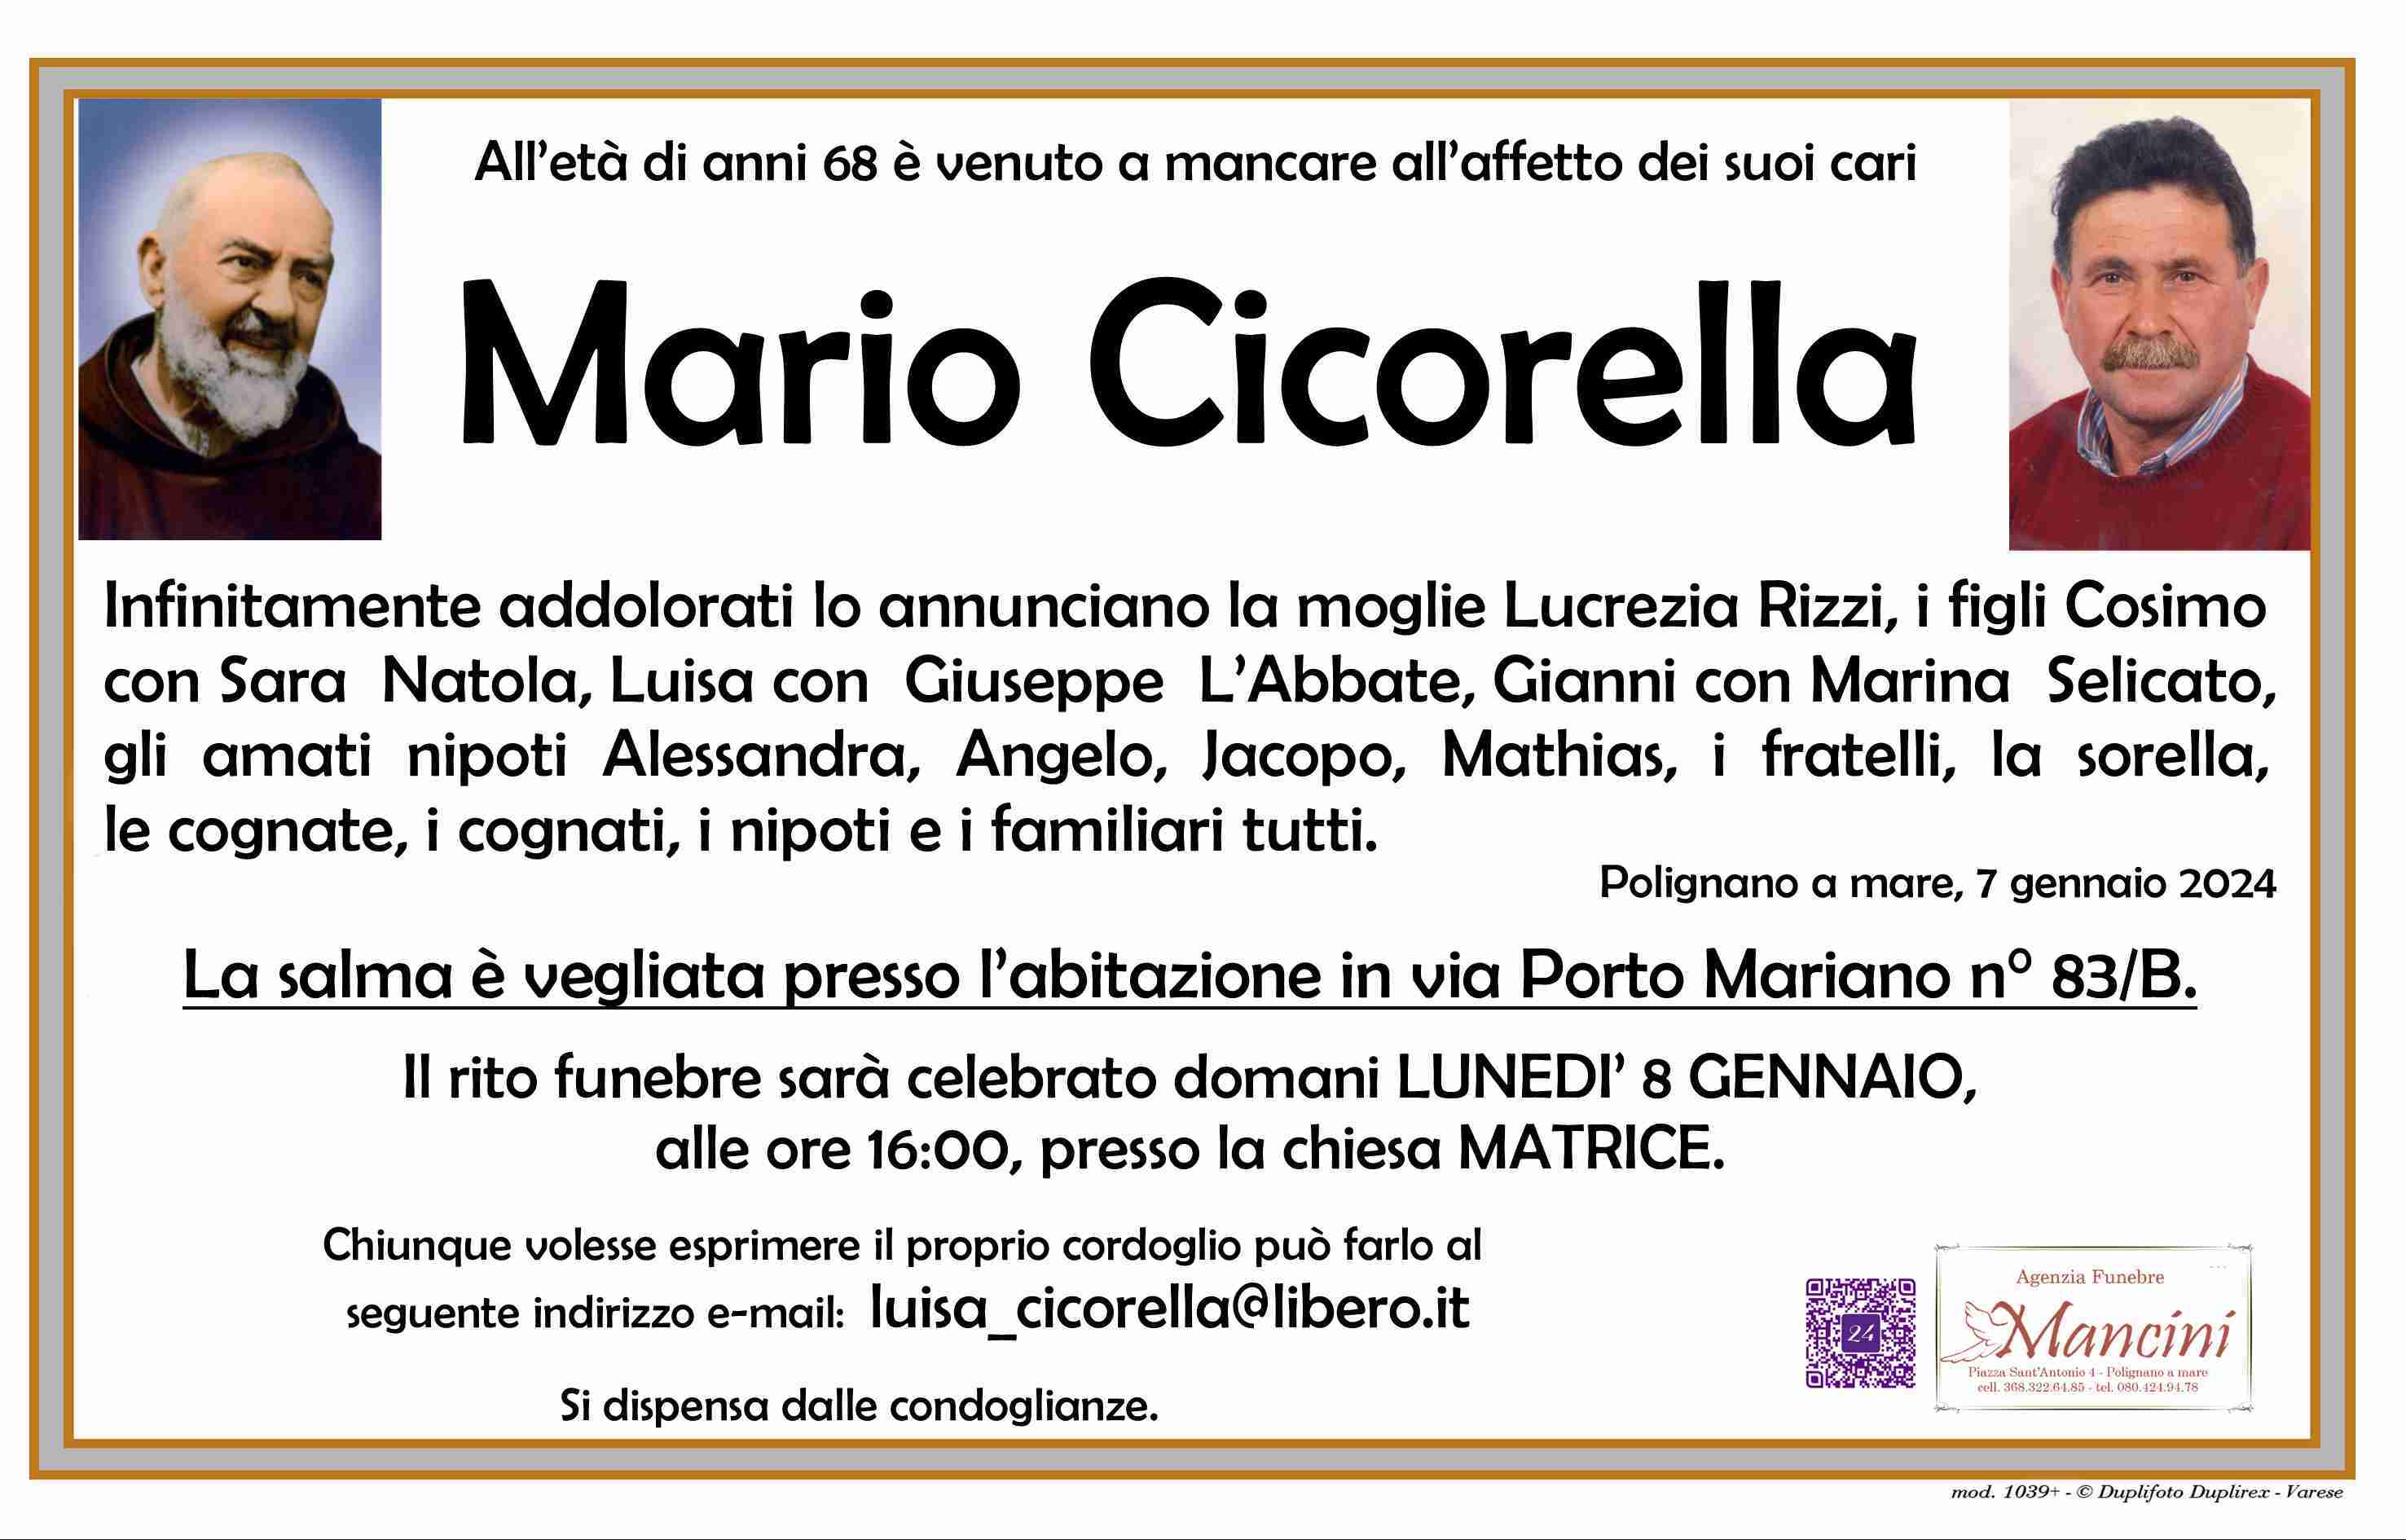 Mario Cicorella